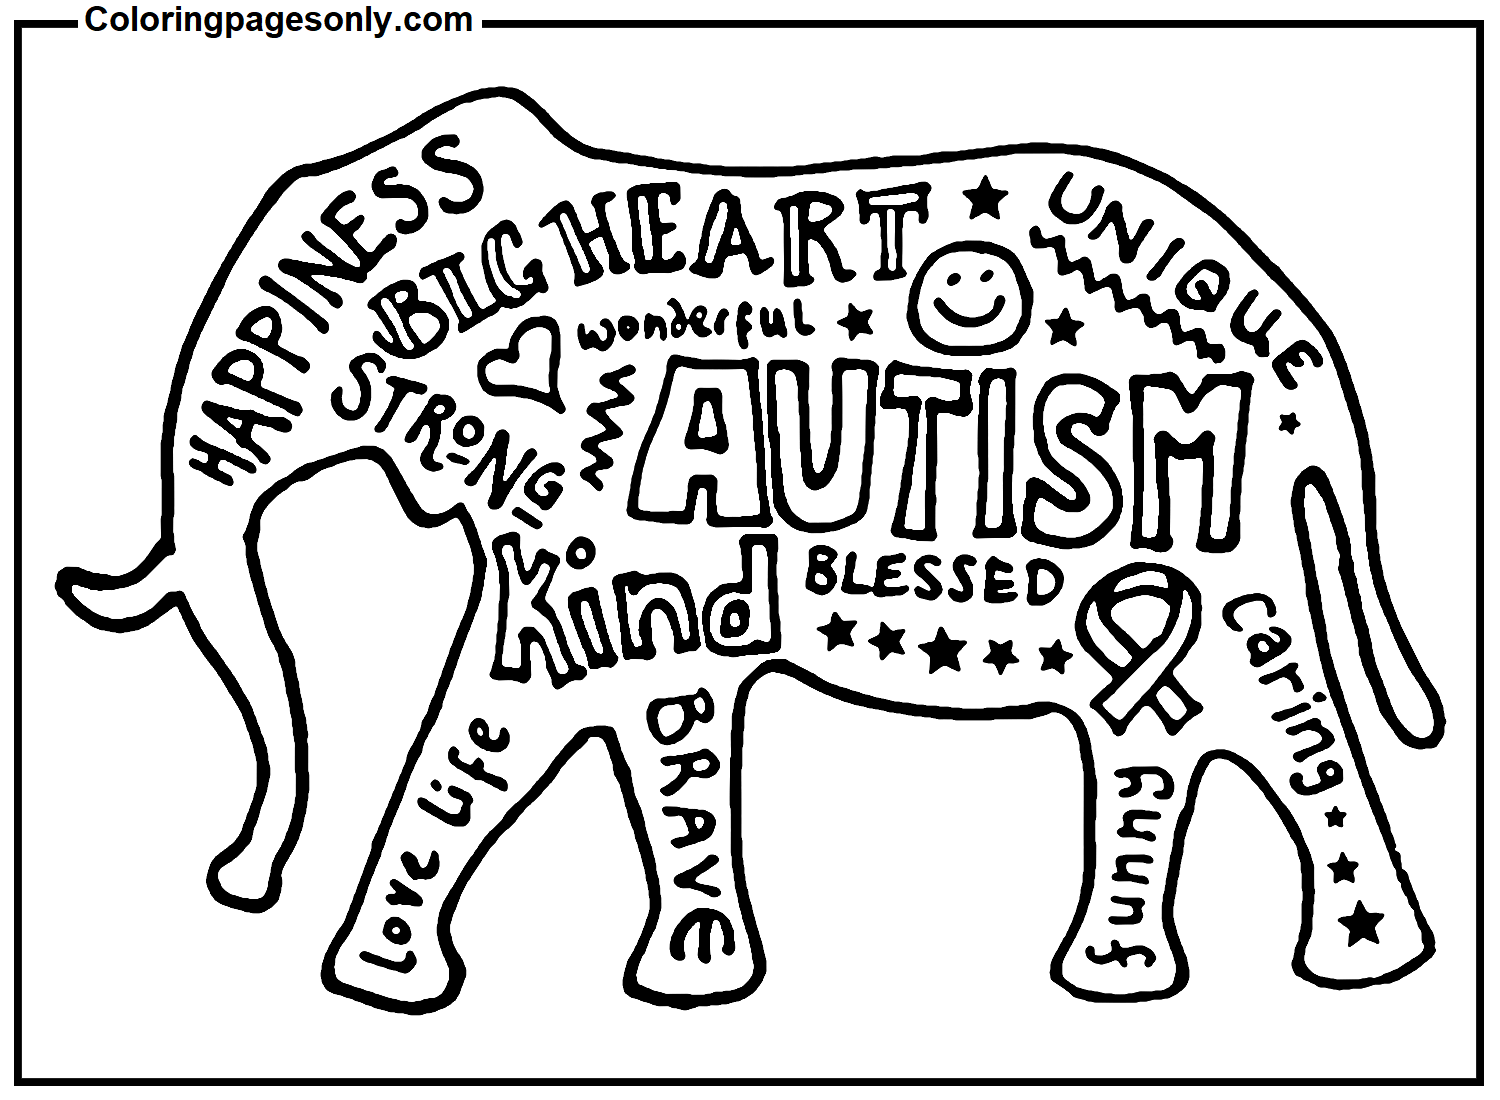 Imágenes de concientización sobre el autismo del Día Mundial de Concientización sobre el Autismo